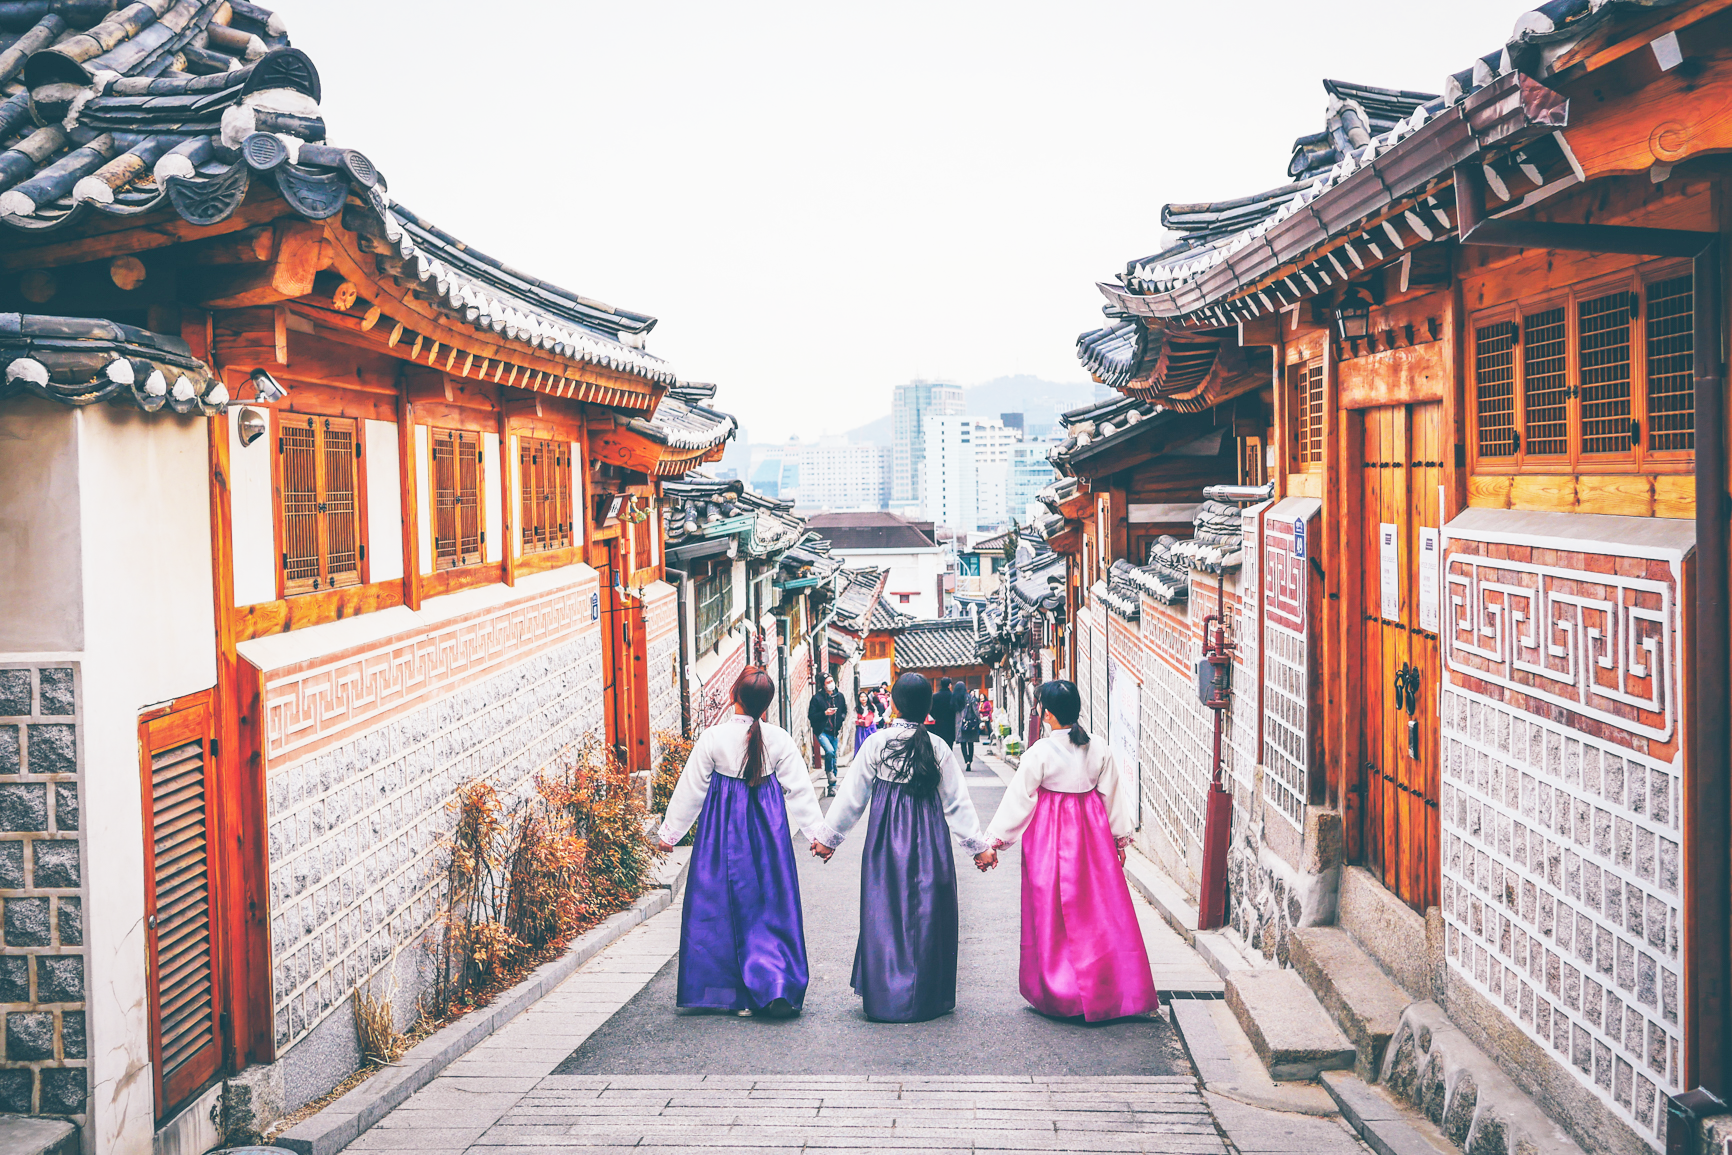 Hàn Quốc không chỉ là điểm đến du lịch tuyệt vời mà còn là nơi lý tưởng để bạn sống ảo. Trong khi khám phá những địa điểm độc đáo và thú vị, bạn sẽ tìm thấy nhiều điểm ảnh đẹp để lưu giữ những kỷ niệm vô cùng đáng nhớ.